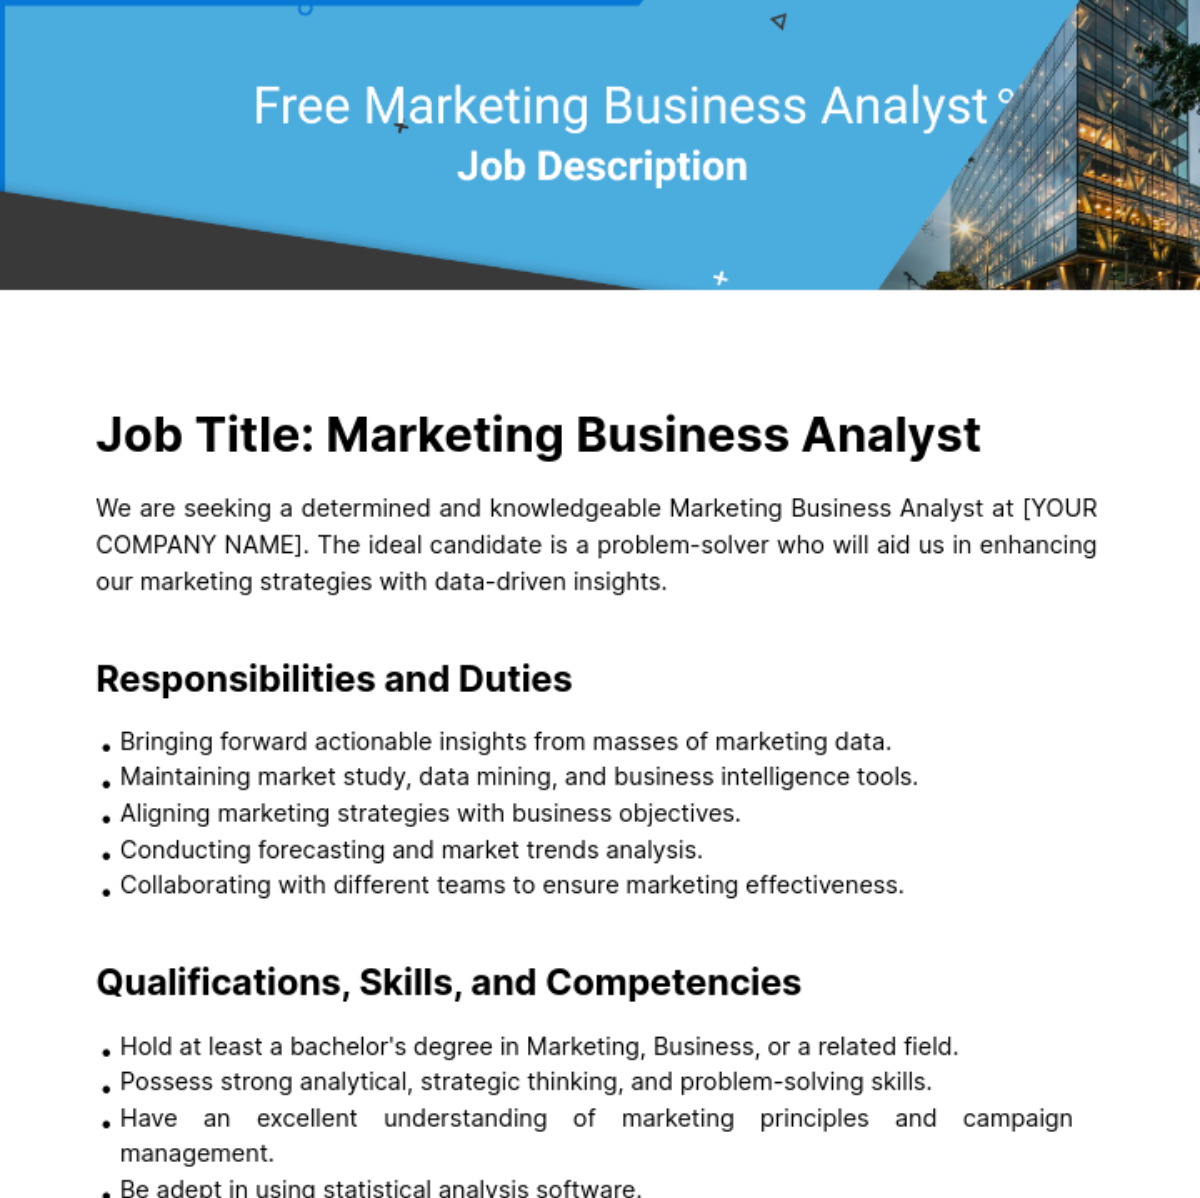 Marketing Business Analyst Job Description Template